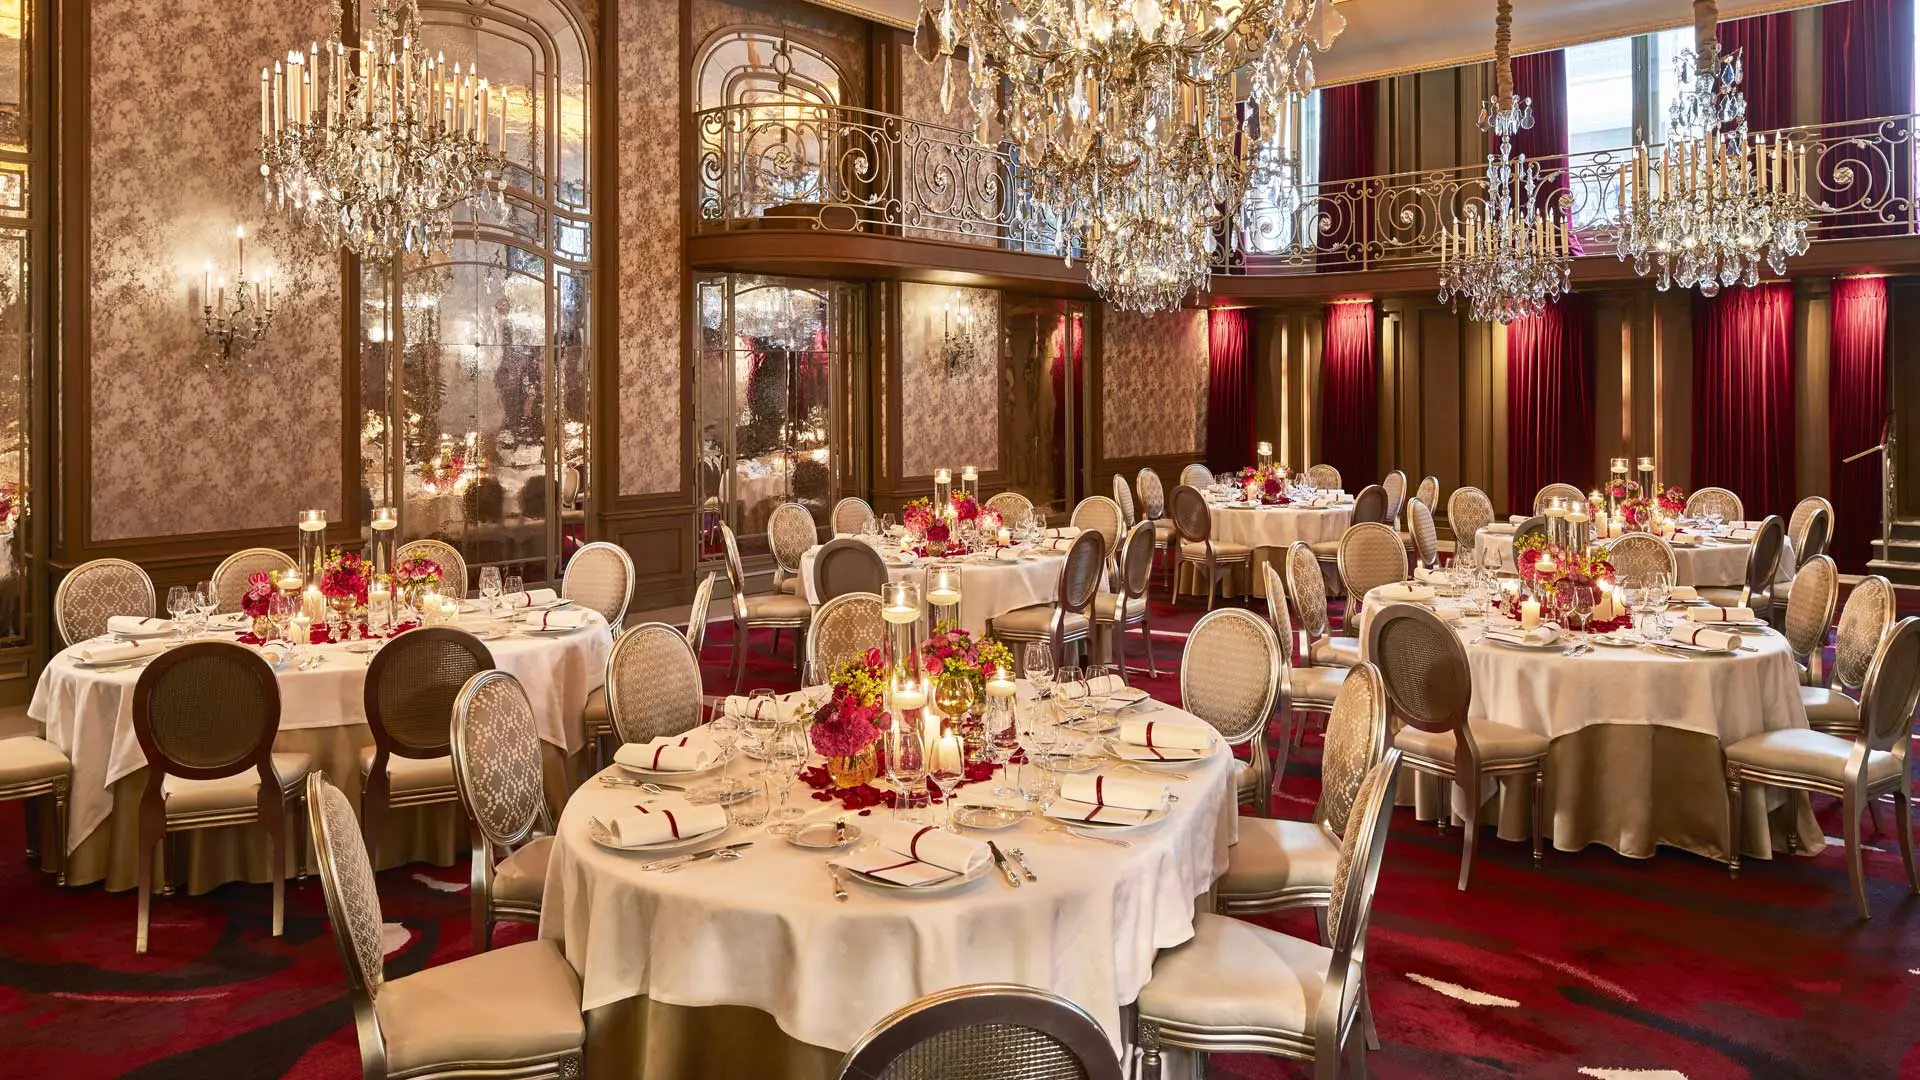 Hotel review Restaurants & Bars' - Hôtel Plaza Athénée Paris - 5